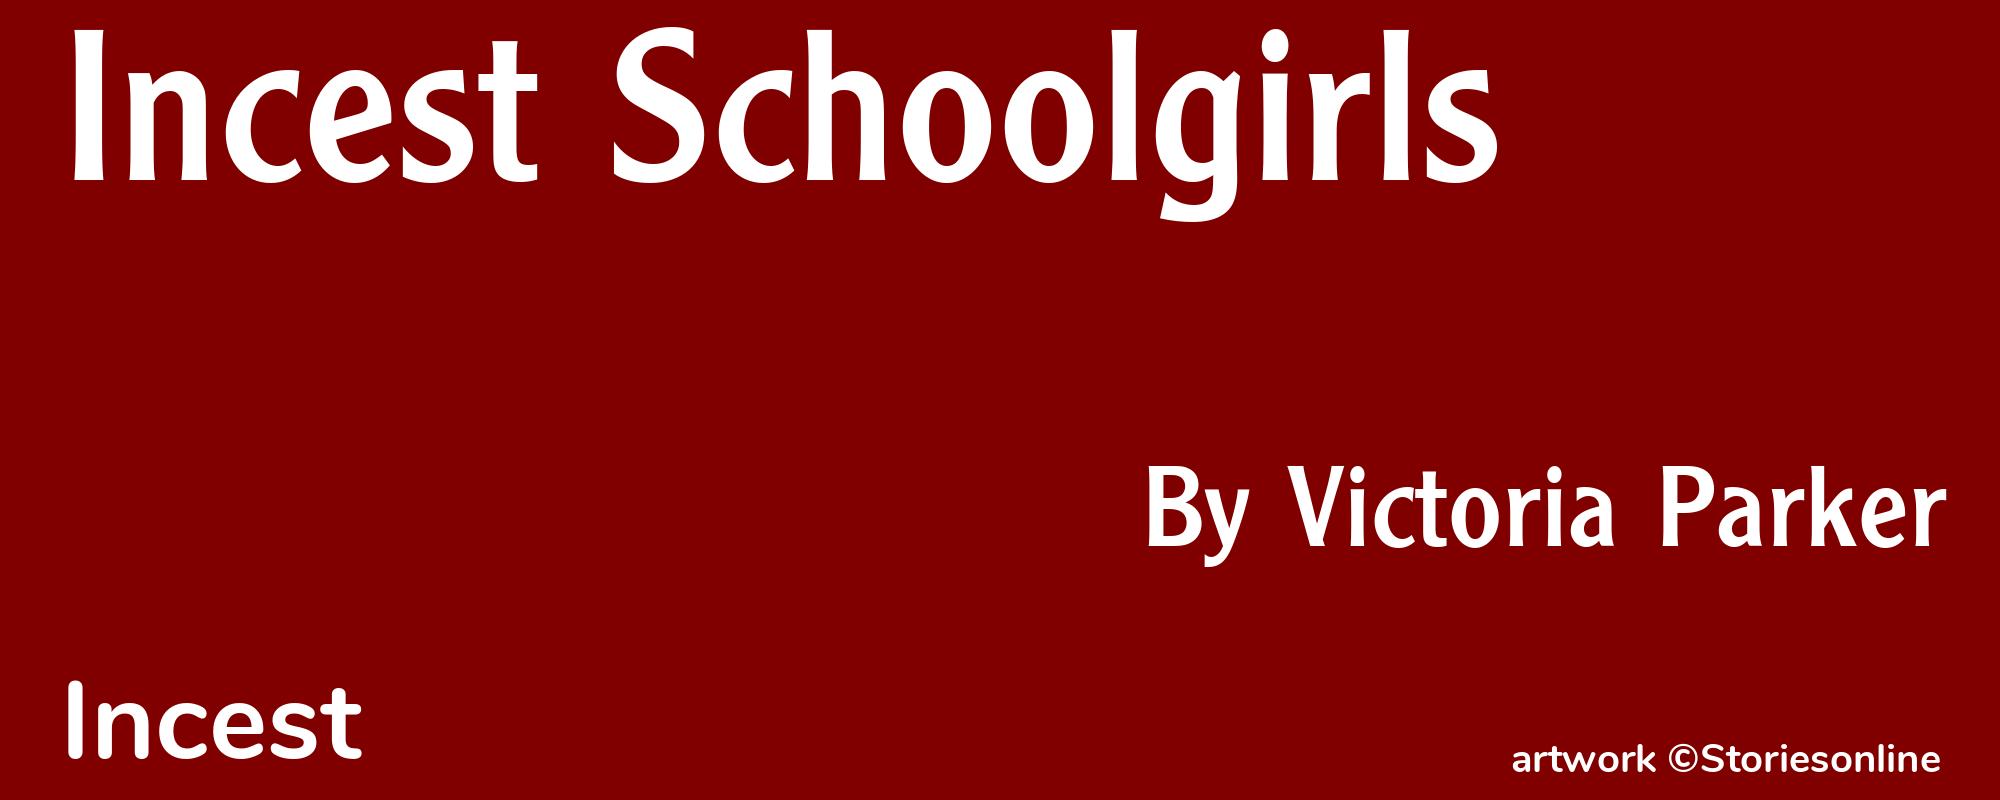 Incest Schoolgirls - Cover